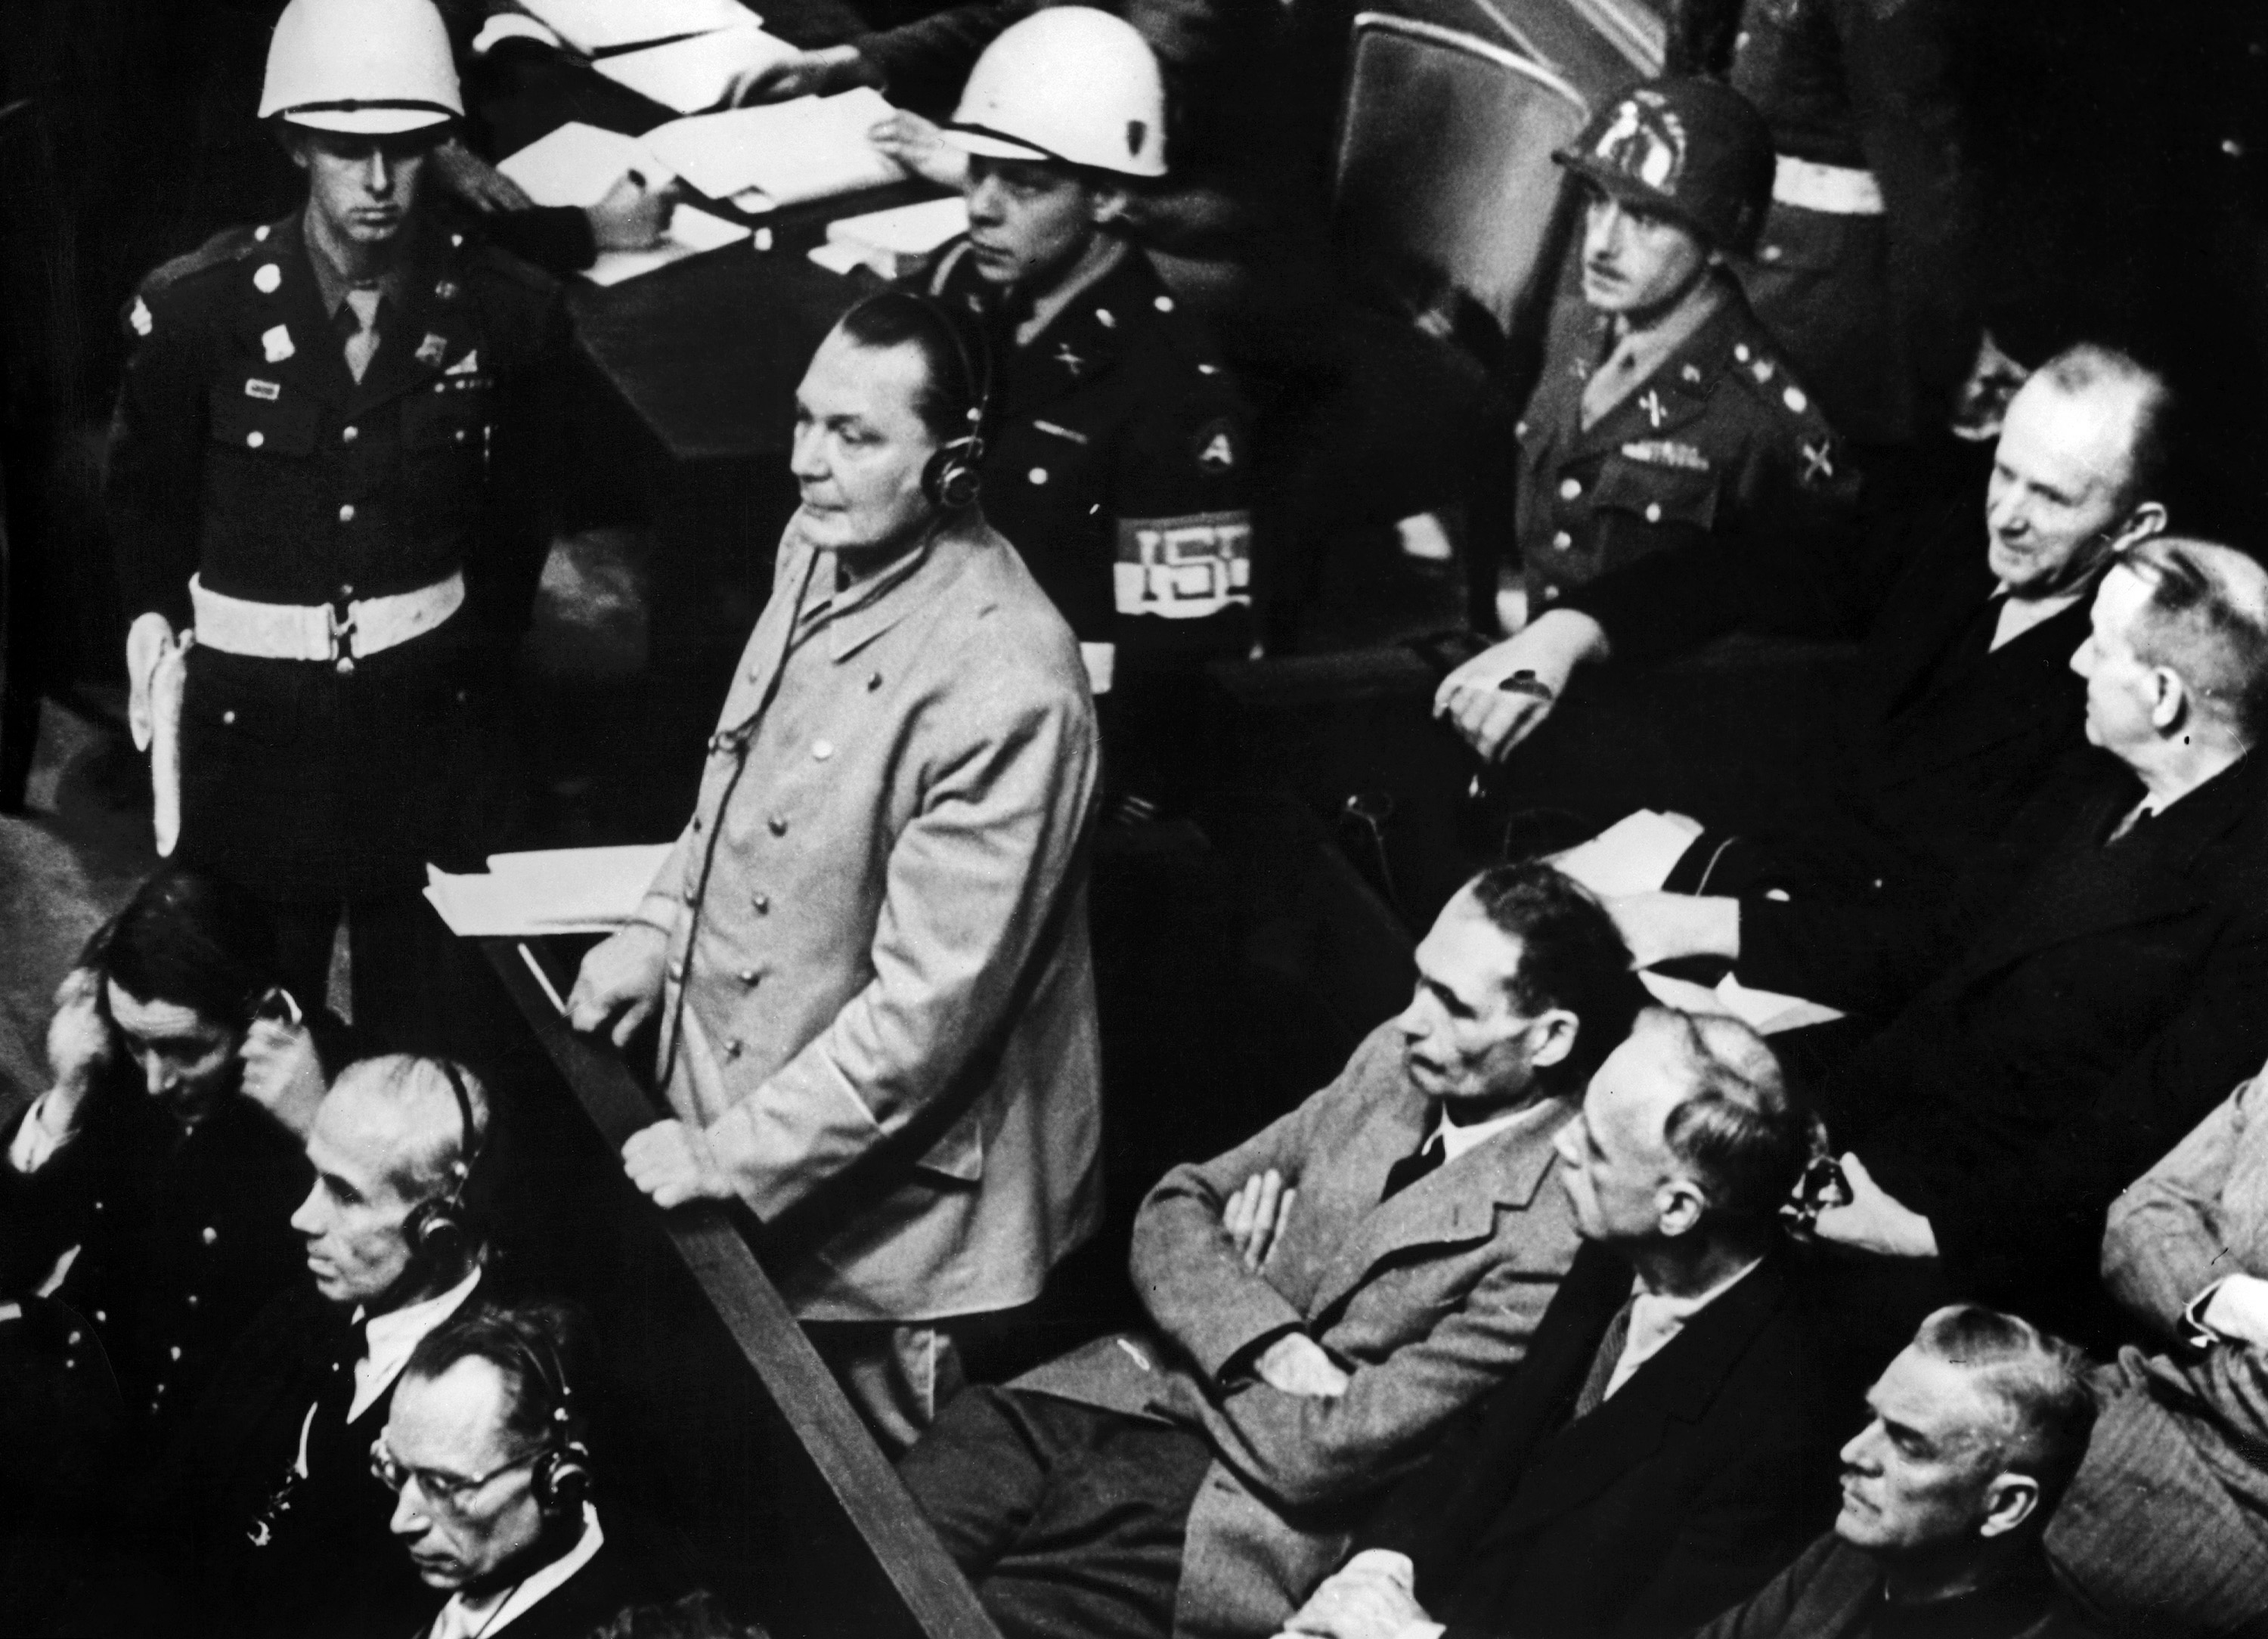 Hermann Göring, a Harmadik Birodalom második embere, a német légierő parancsnoka a nürnbergi perben 1945. november 21-én. Kötél általi halálra ítélték, de s kivégzése előtt öngyilkos lett.